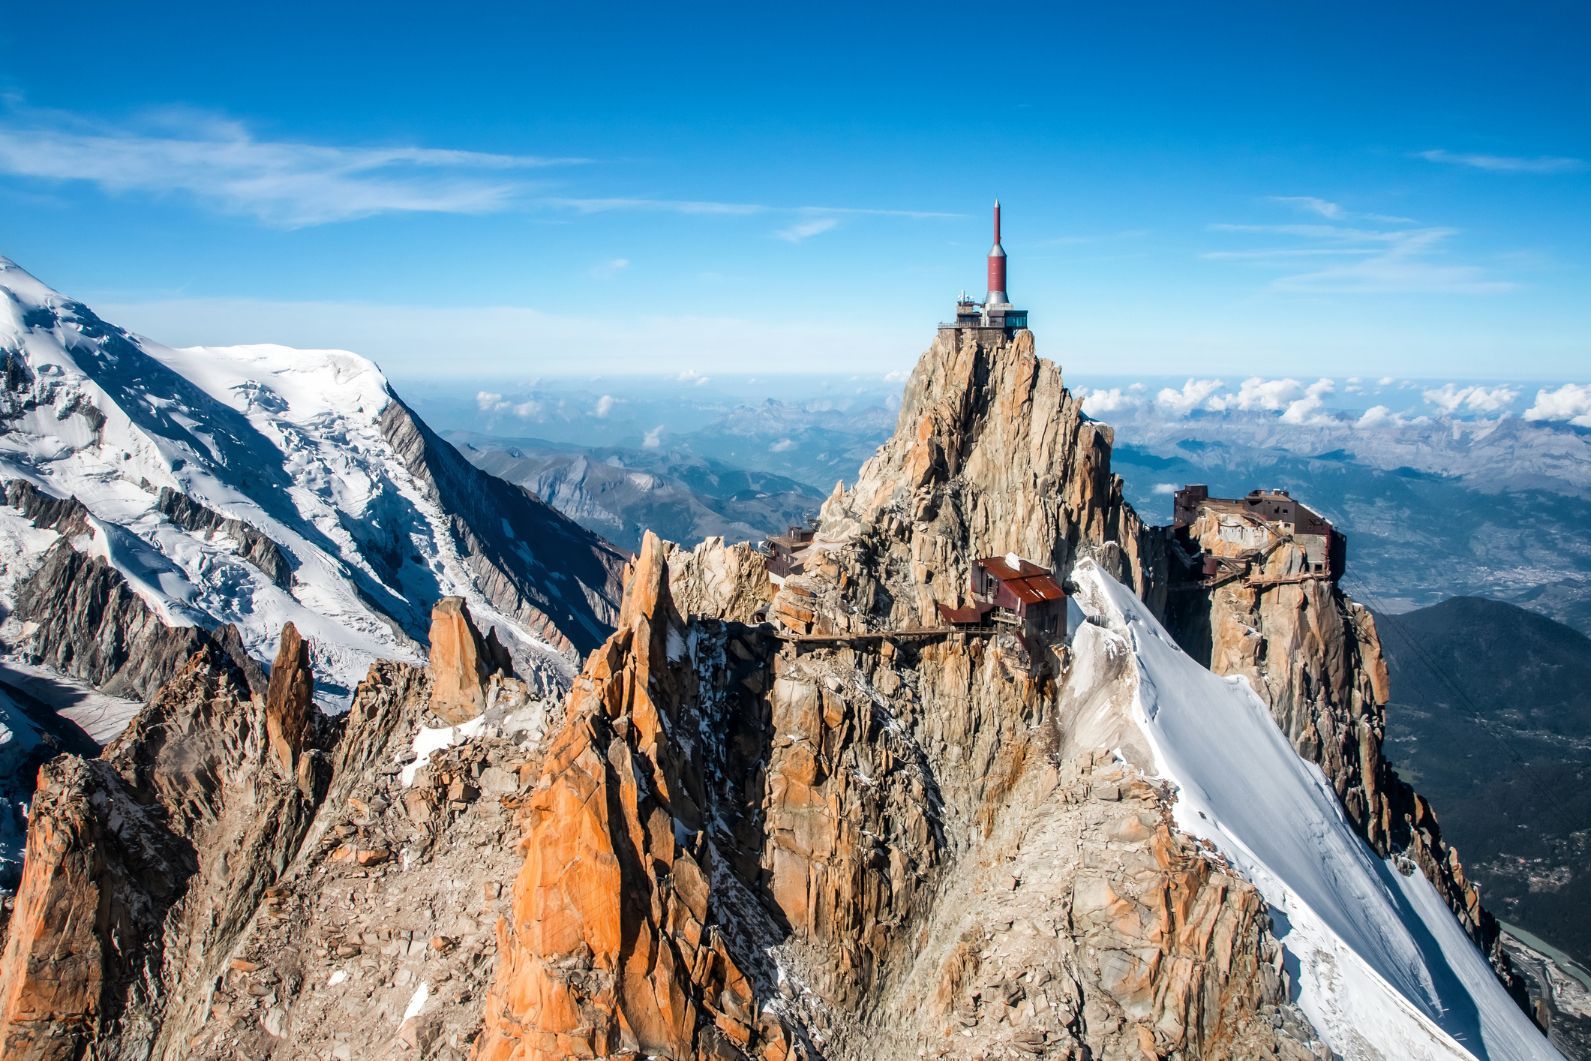 The Tour du Mont Blanc, Part 2 - Chamonix All Year